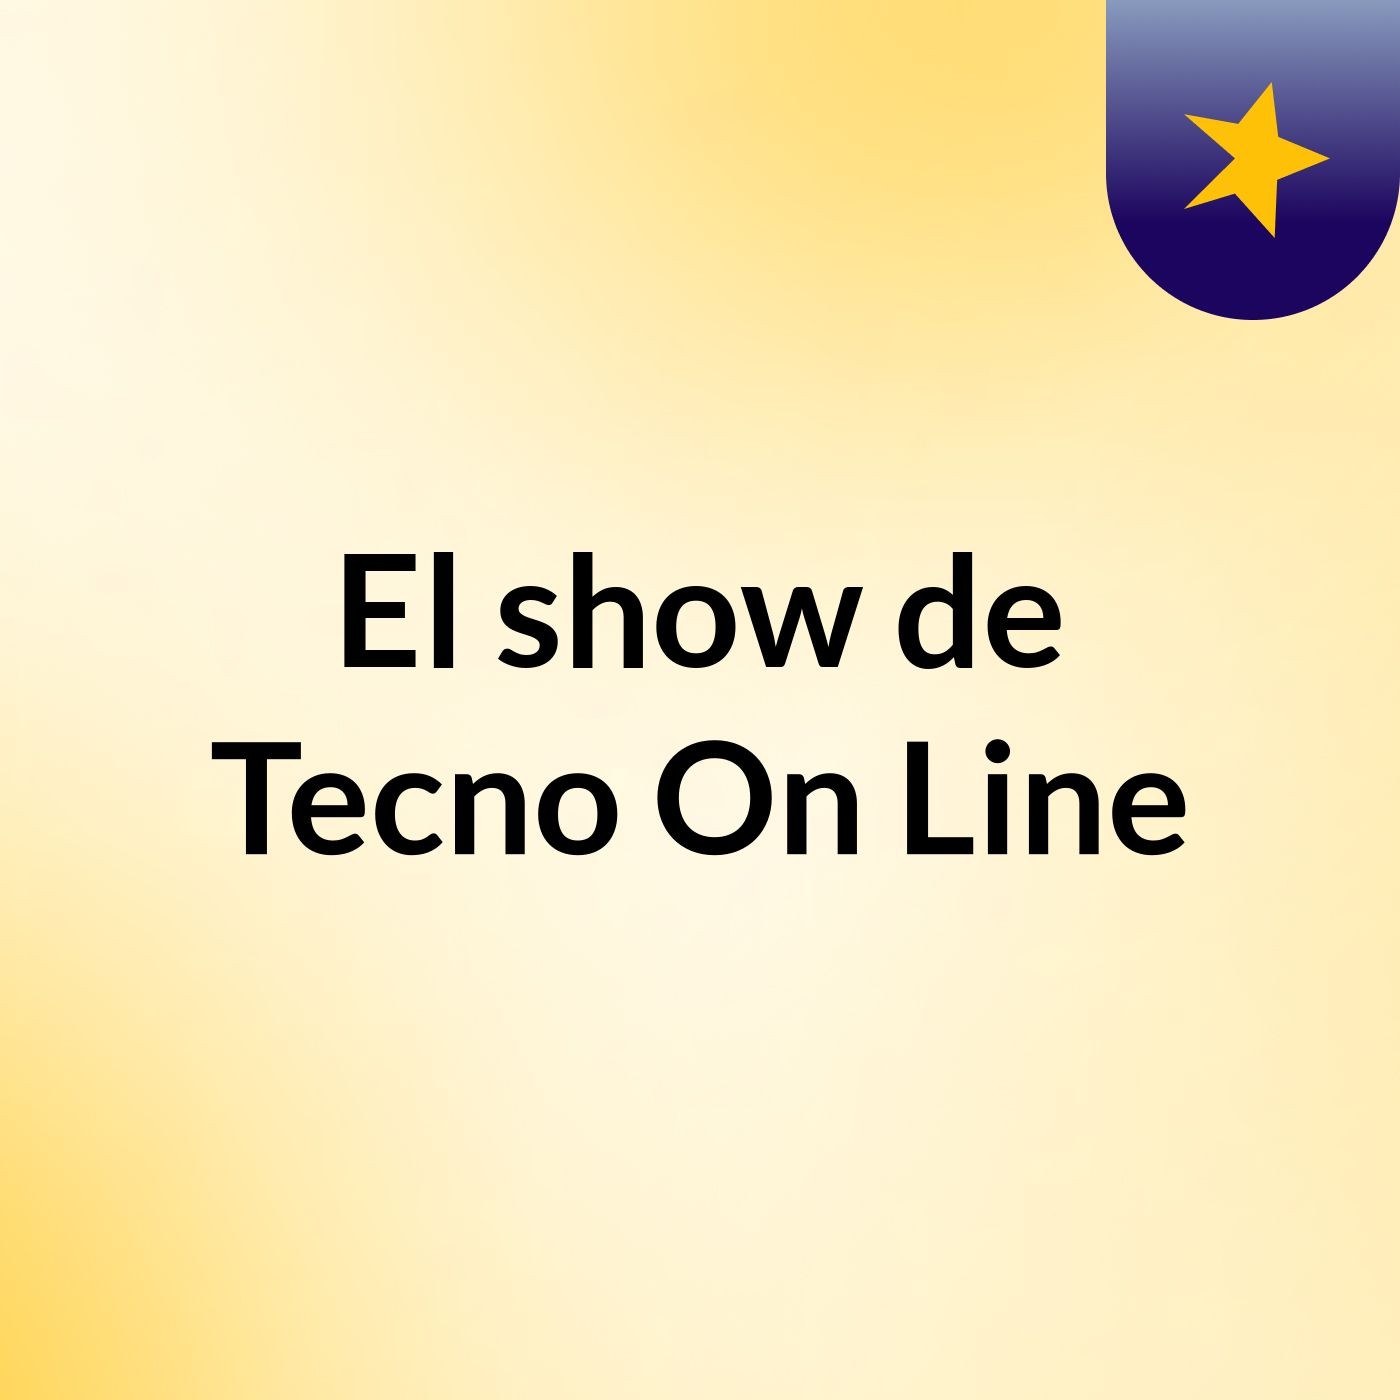 El show de Tecno On Line